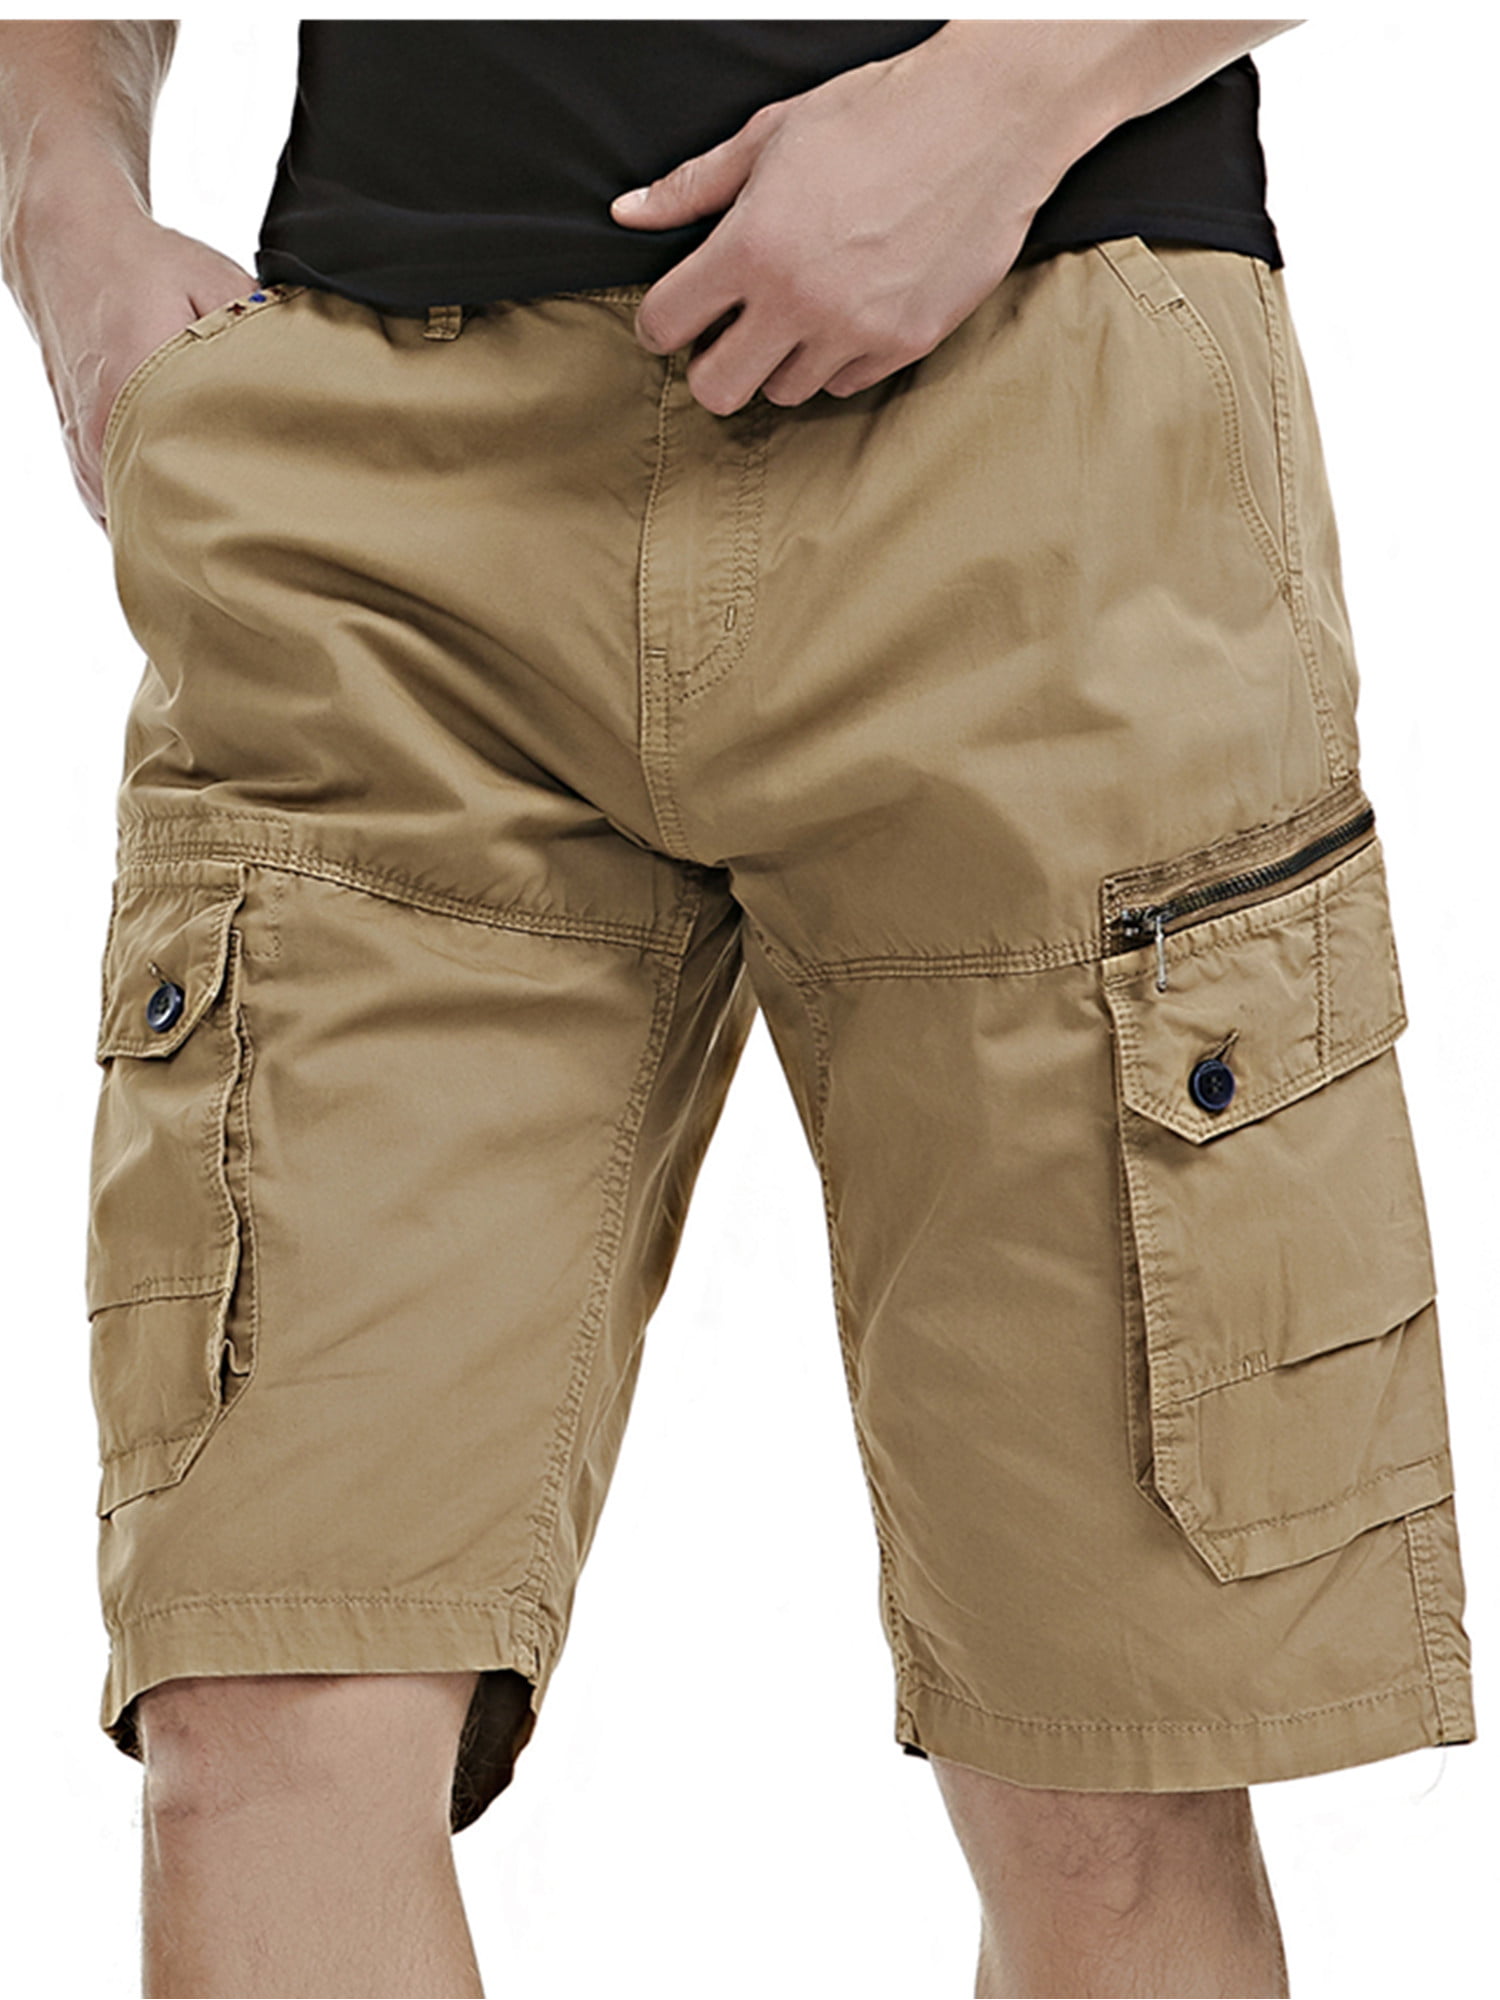 Thethan Mens Urban Cargo Shorts Cotton Outdoor Camo Short Pants